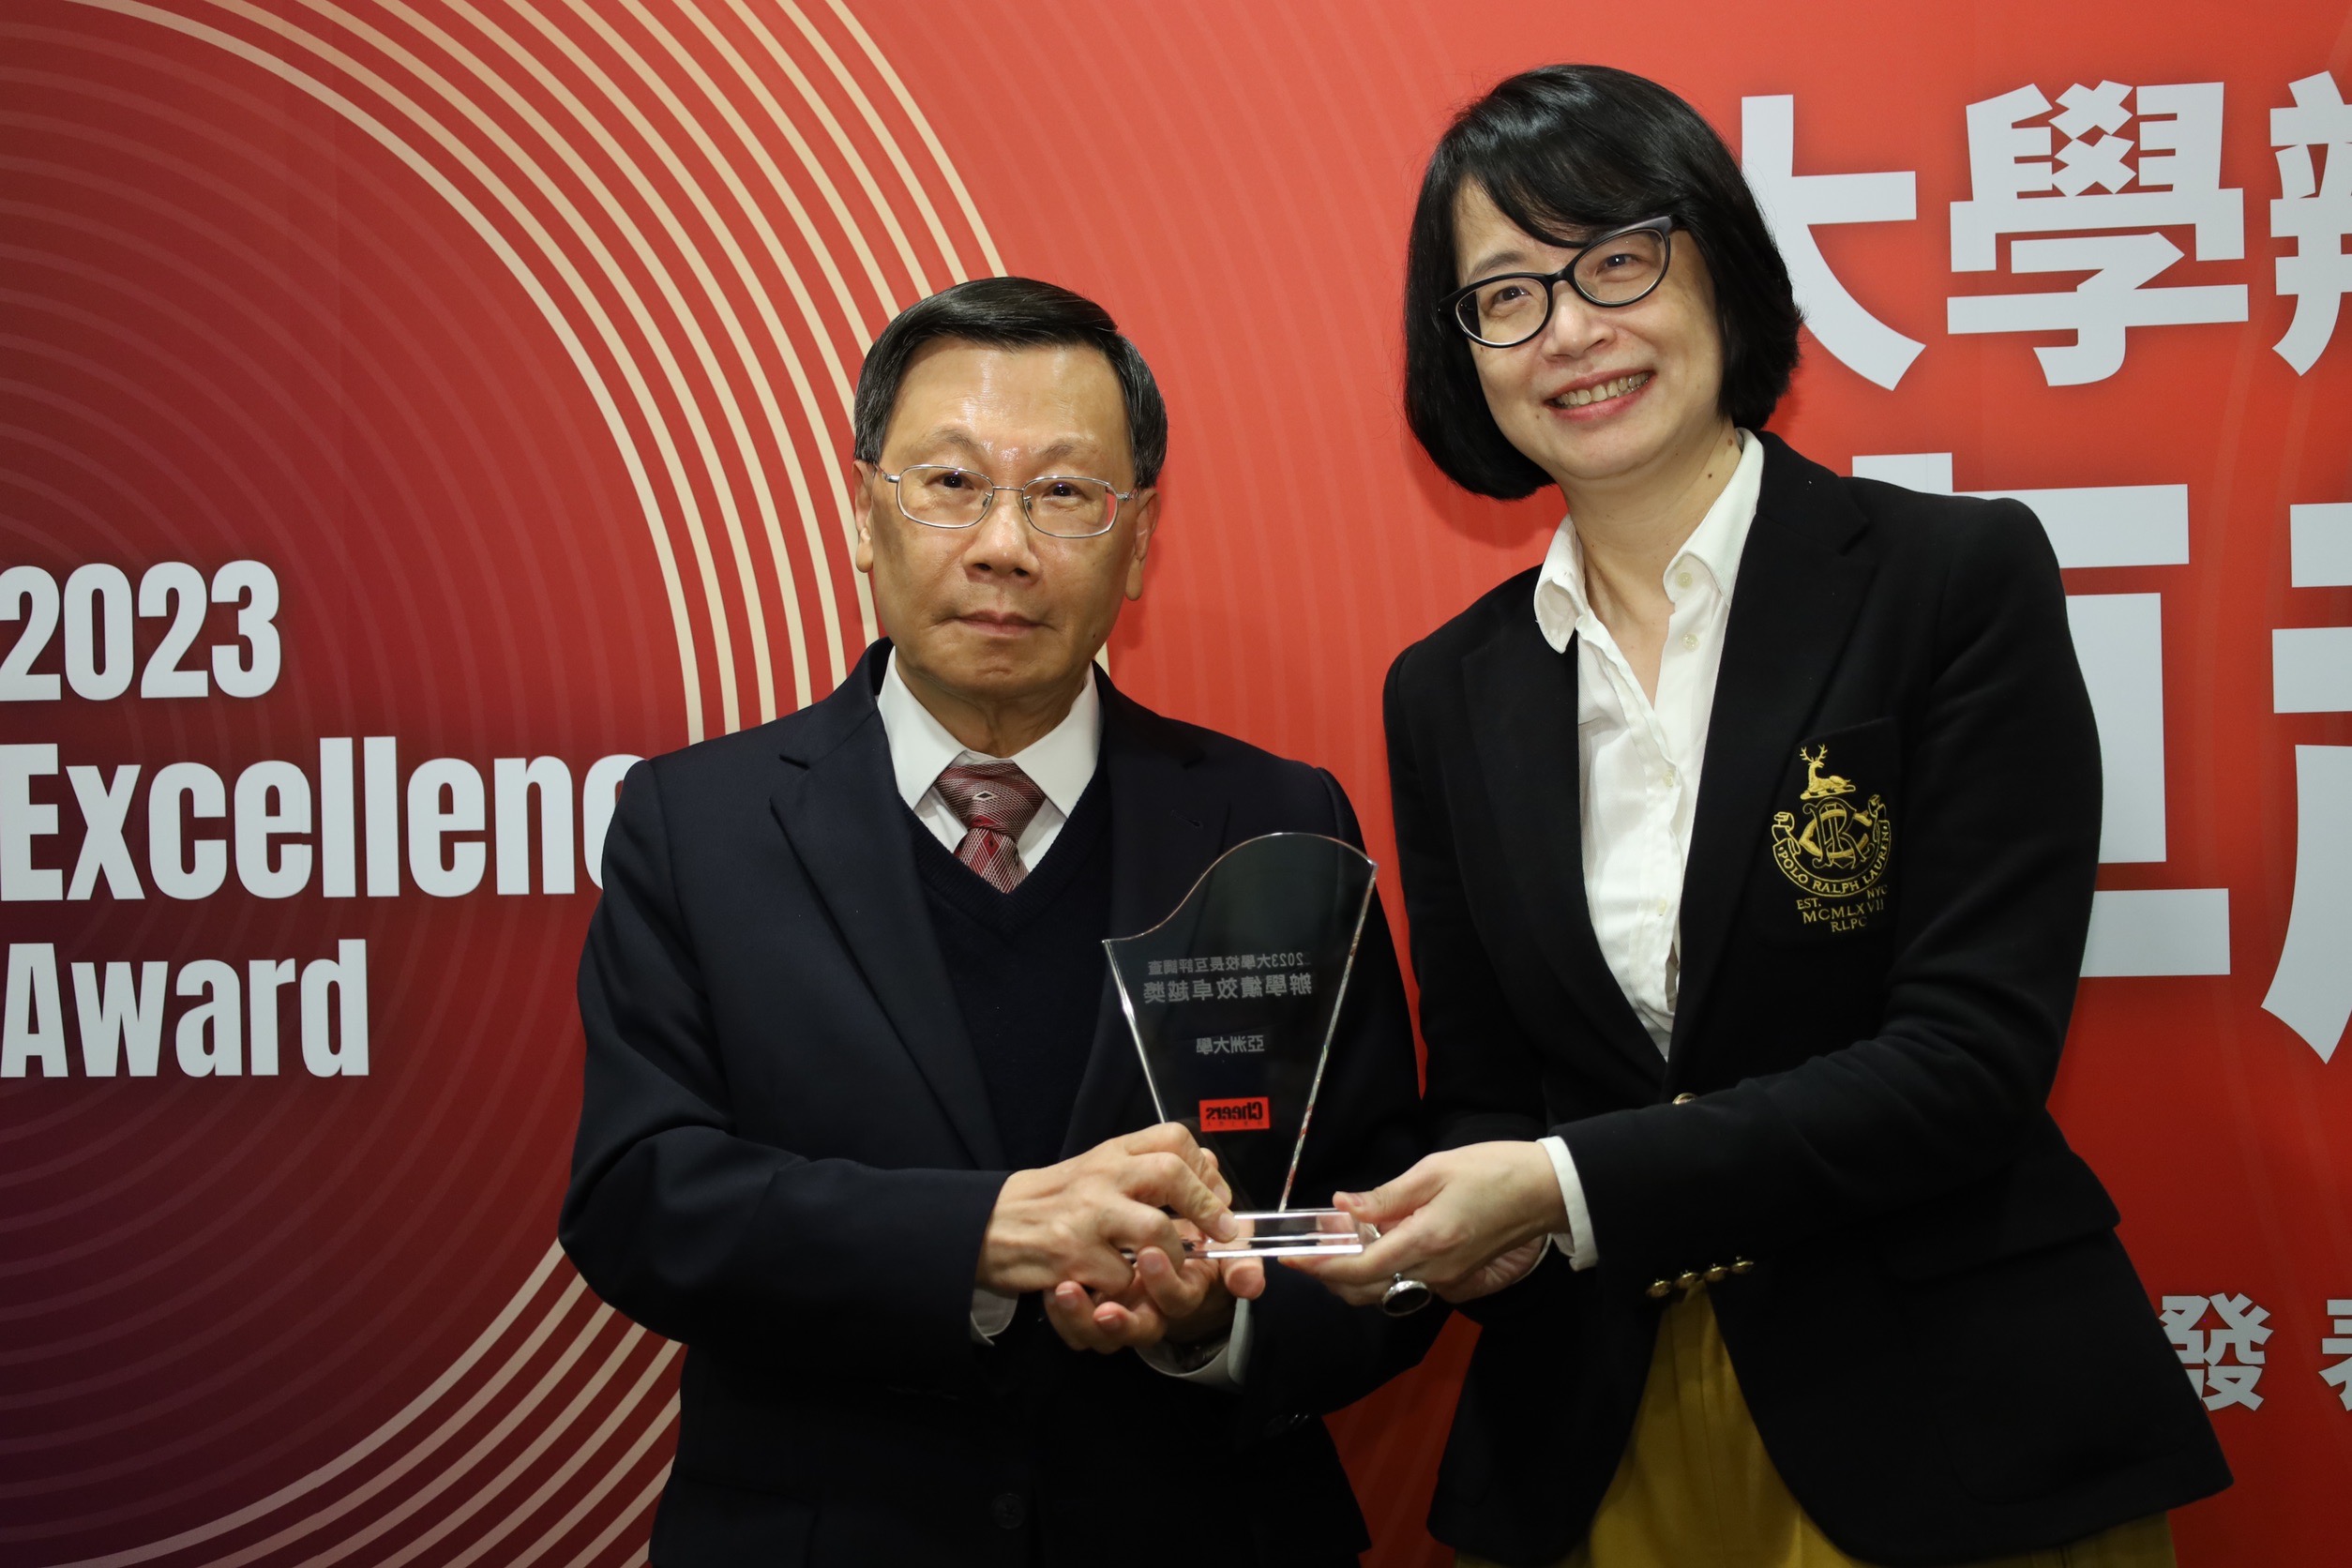 天下雜誌事業群總經理劉鳳珍（右），頒獎給亞大校長蔡進發。